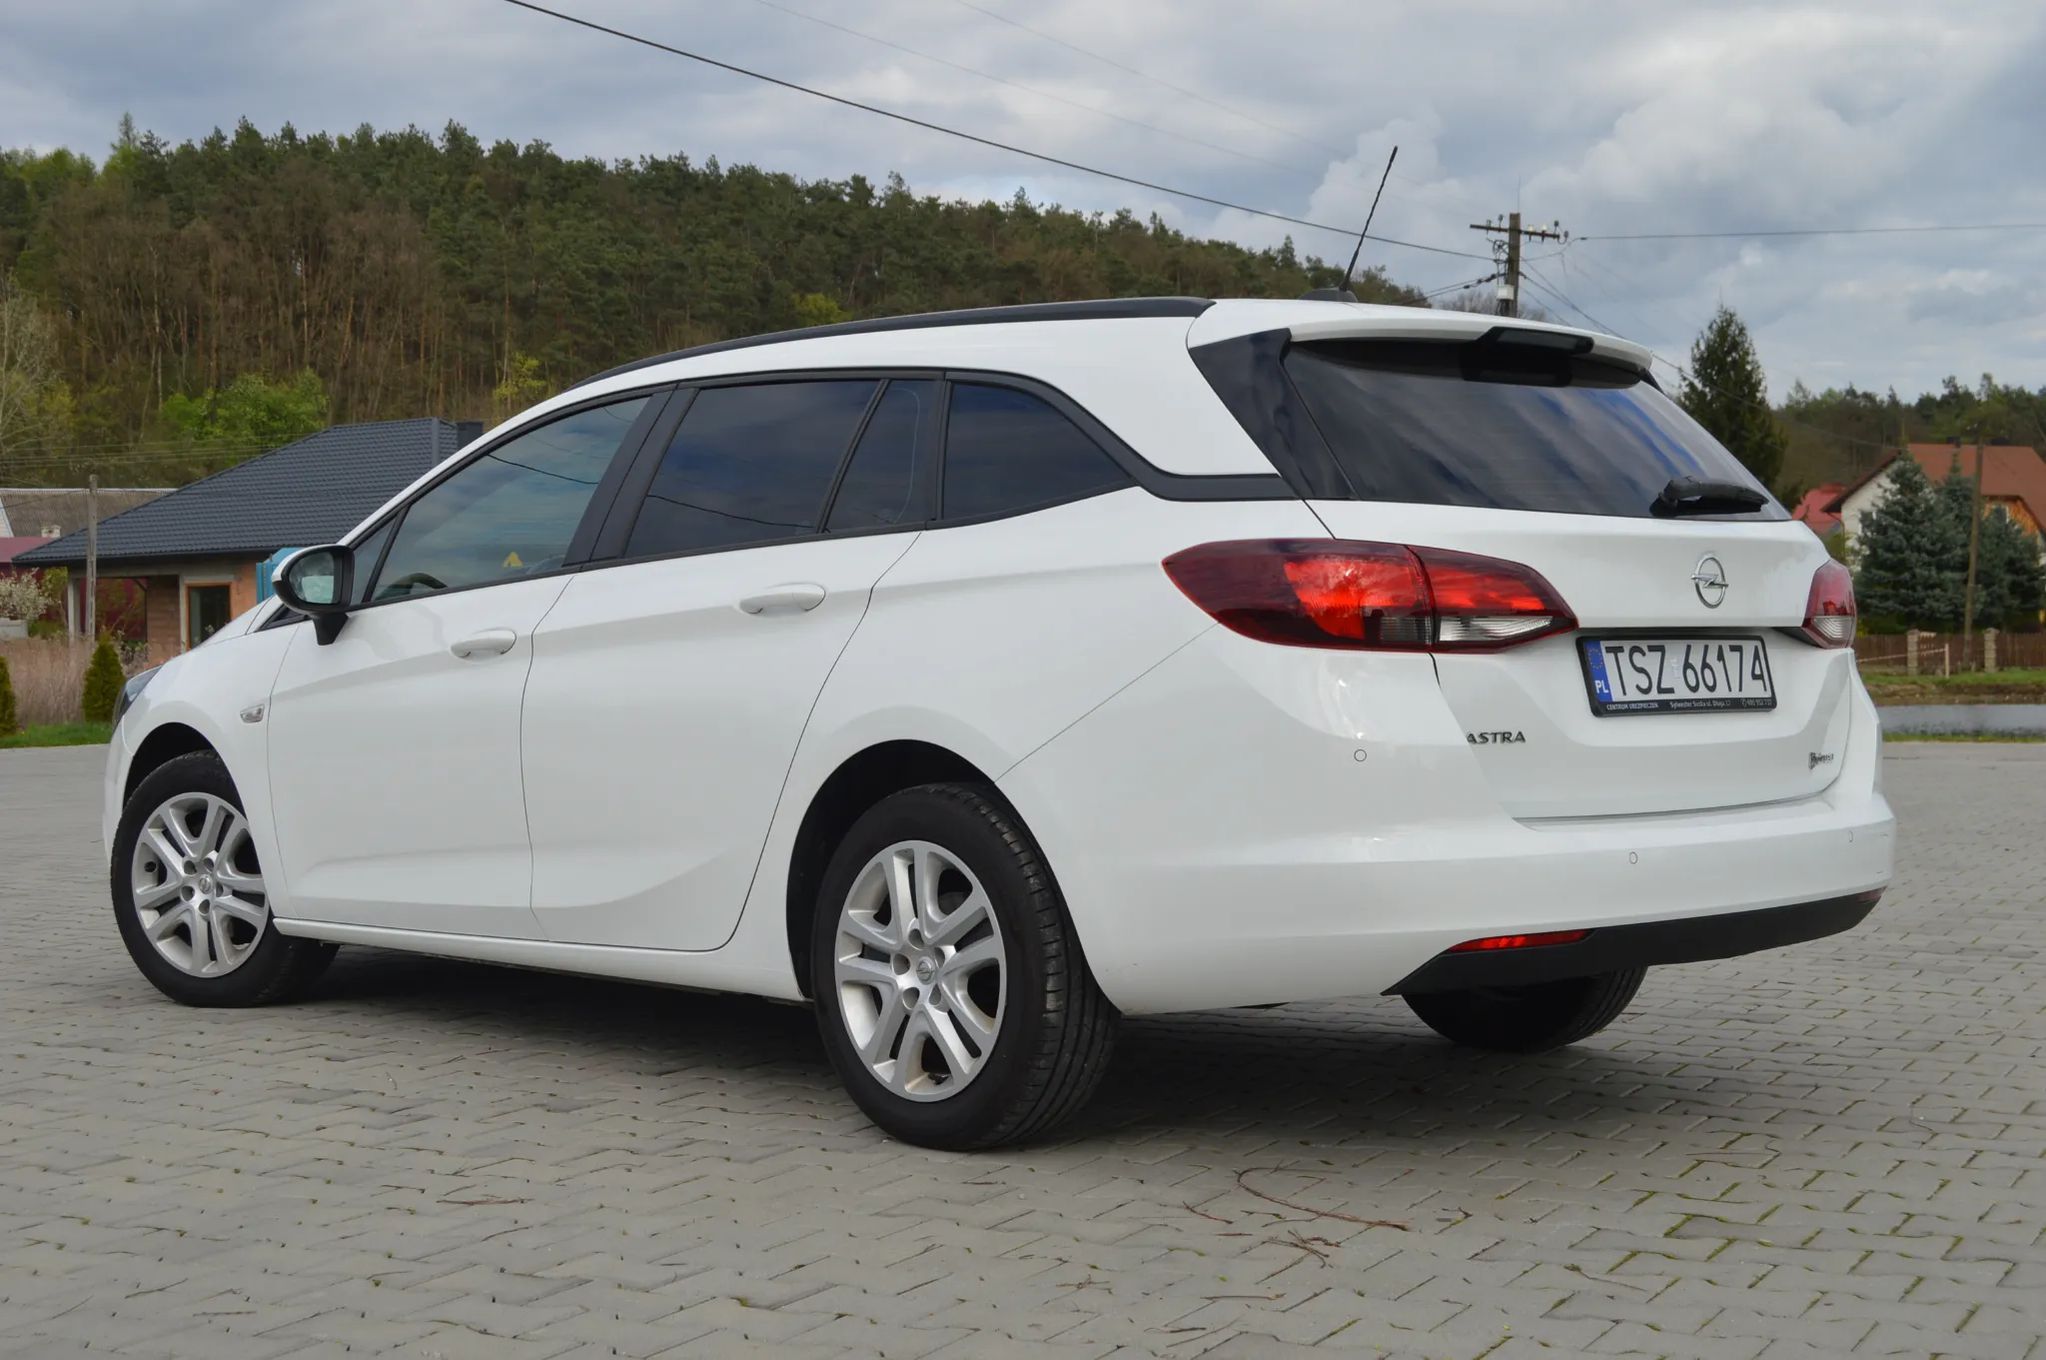 Opel Astra 1,6 CDTI Serwisowany, Po wymianie rozrządu, Bez wkładu